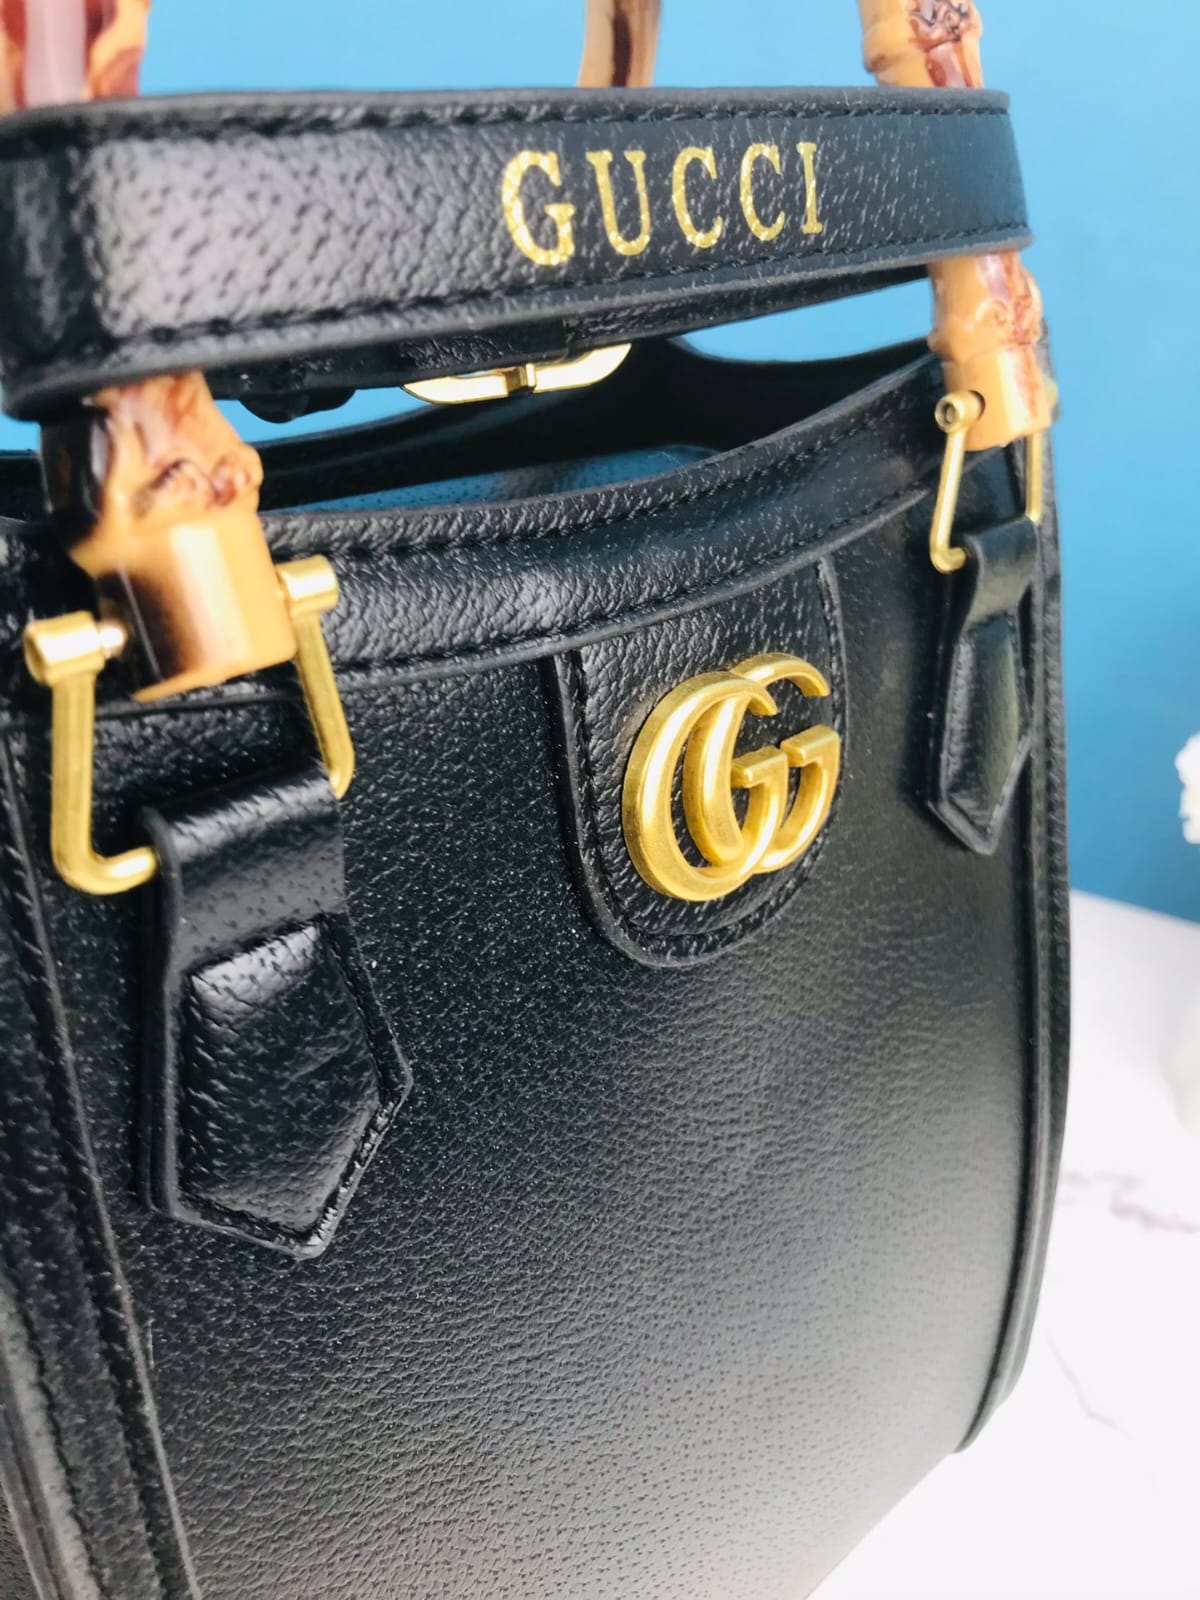 Gucci bamboo handle tote handbag